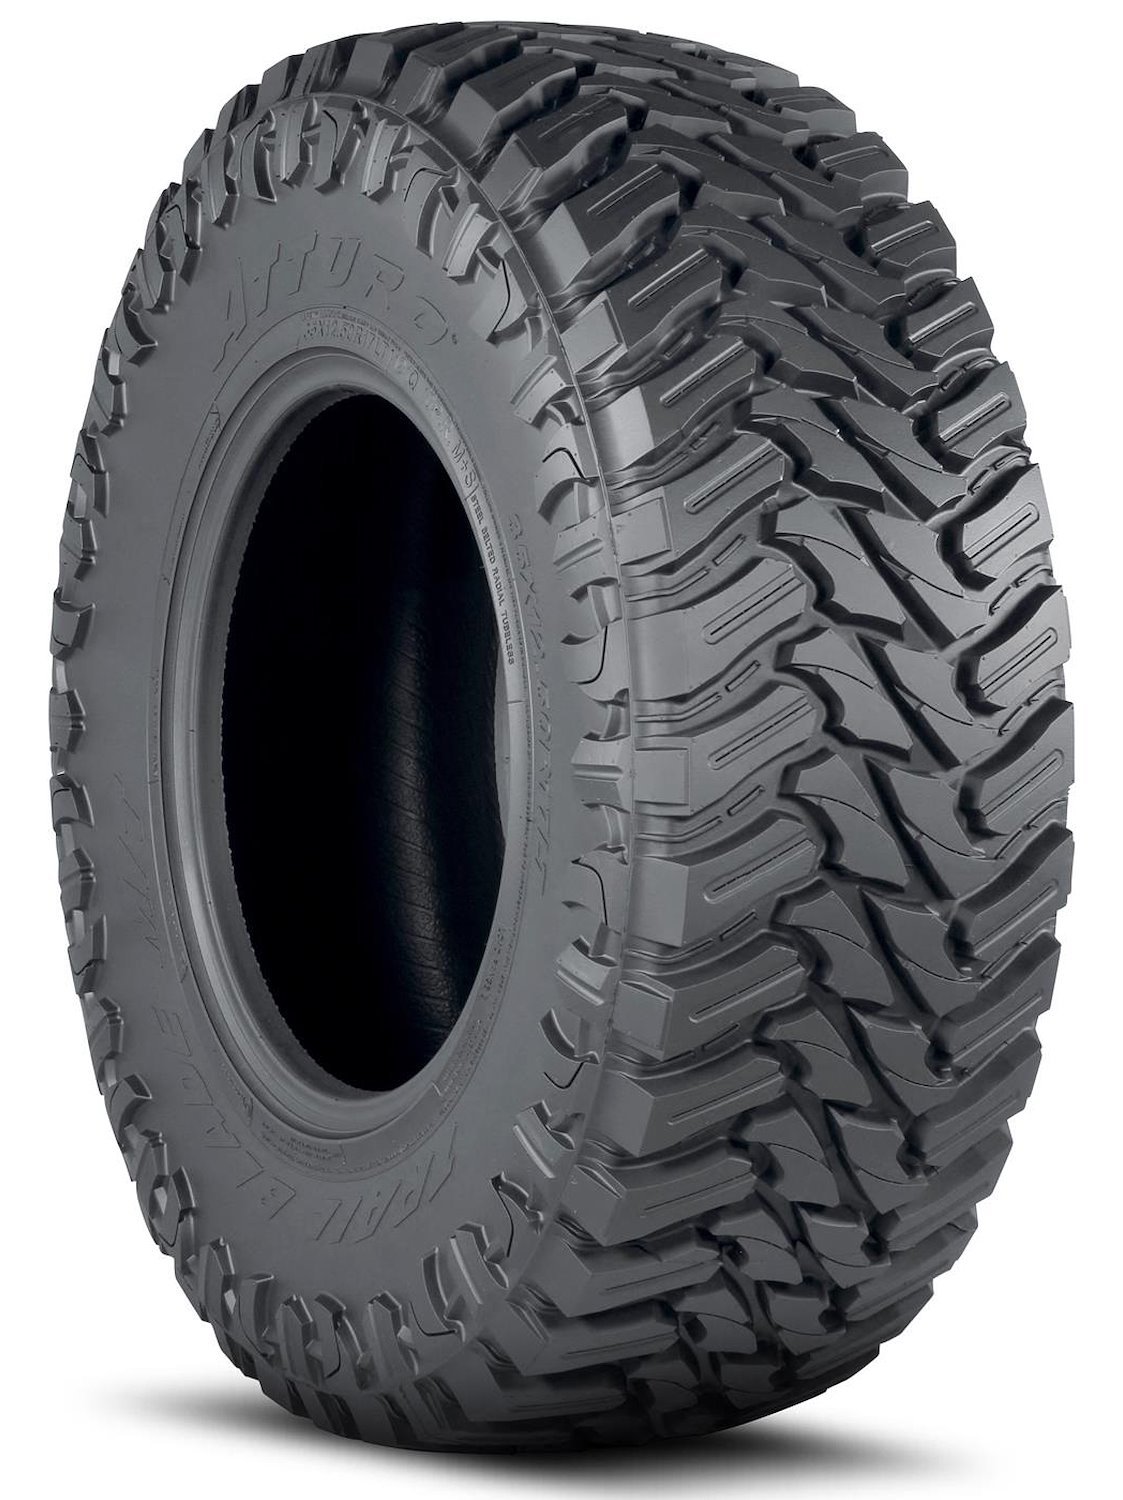 TBMT-LDLM2MA Trail Blade M/T Tire, 33x12.50R22LT